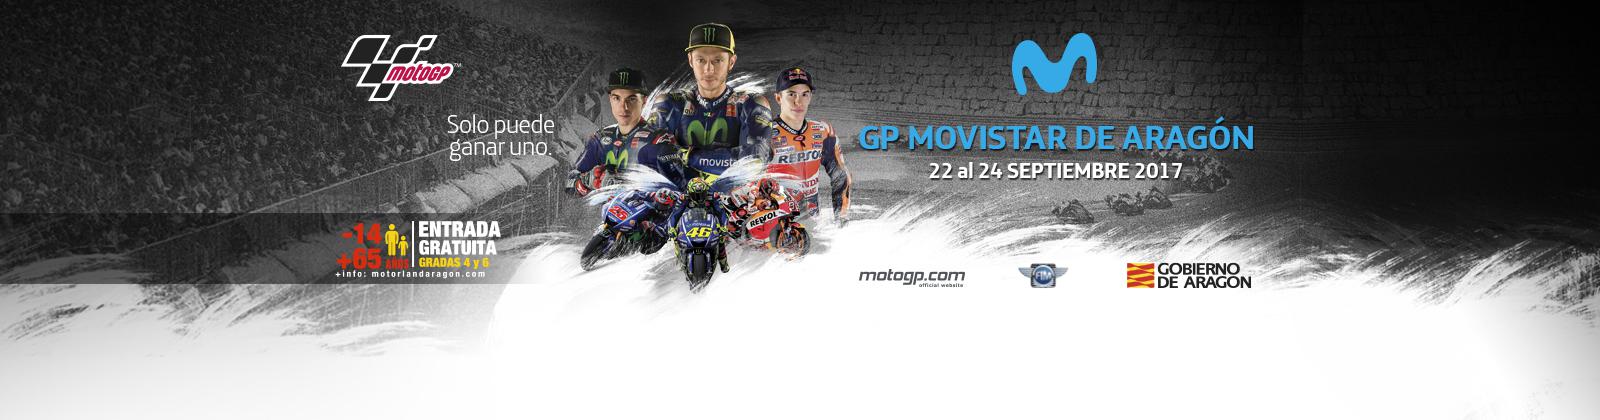 Gran Premio de Aragón de MotoGp: Horarios del fin de semana